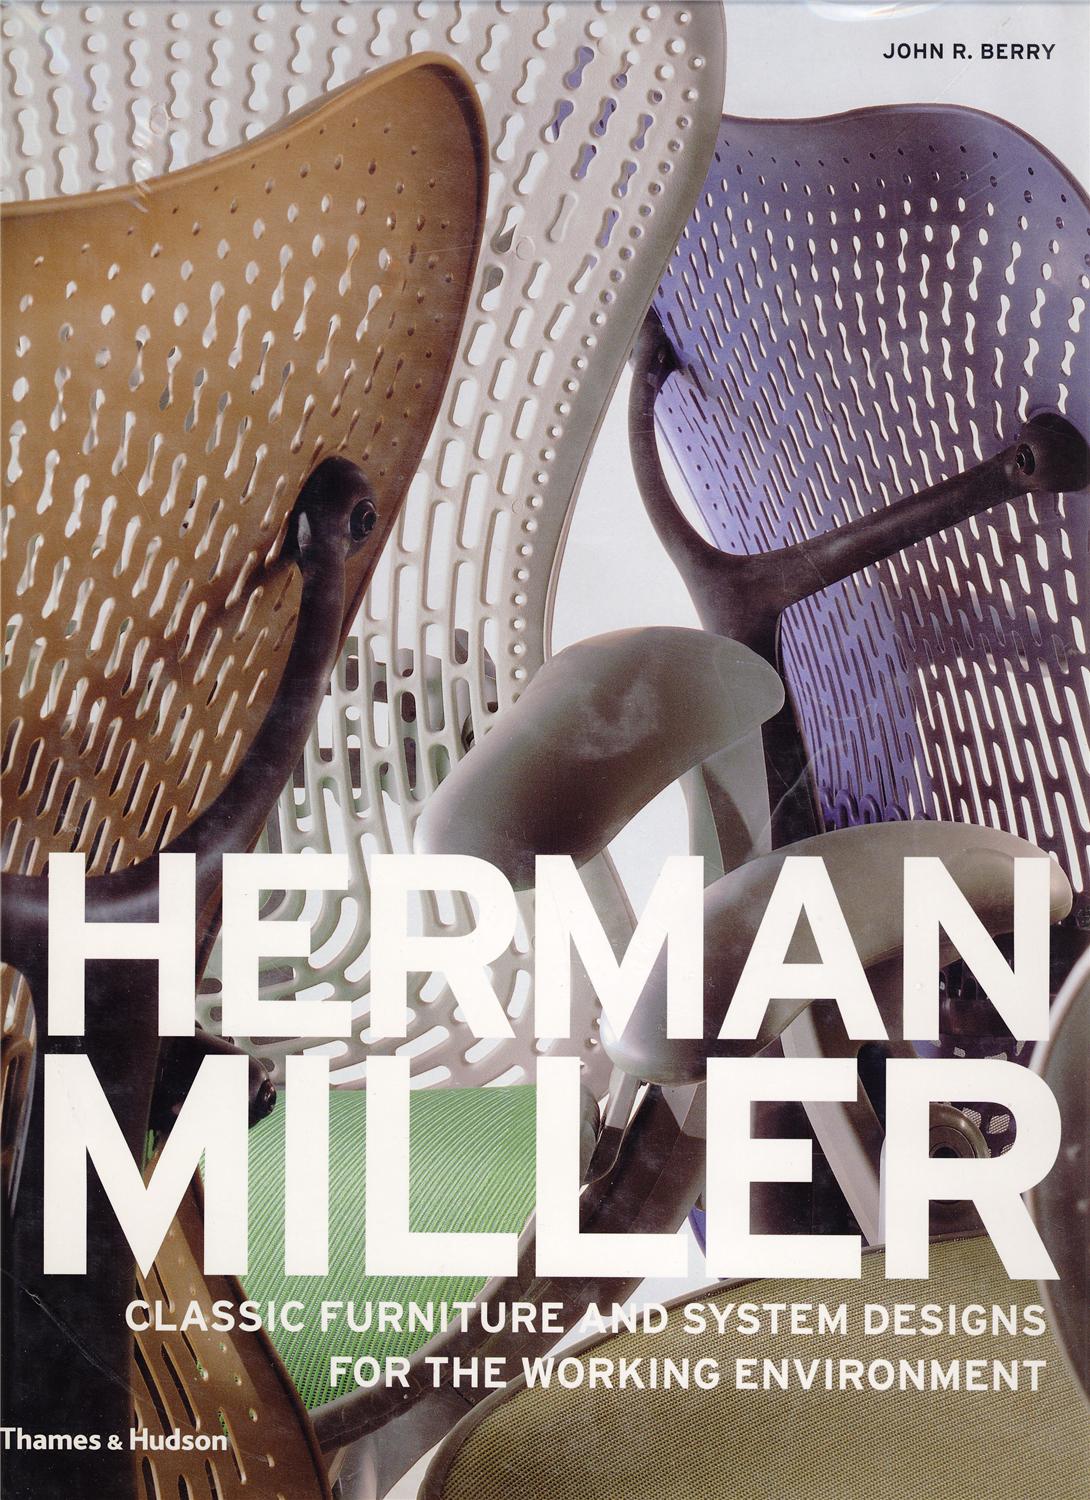 Book: HERMAN MILLER